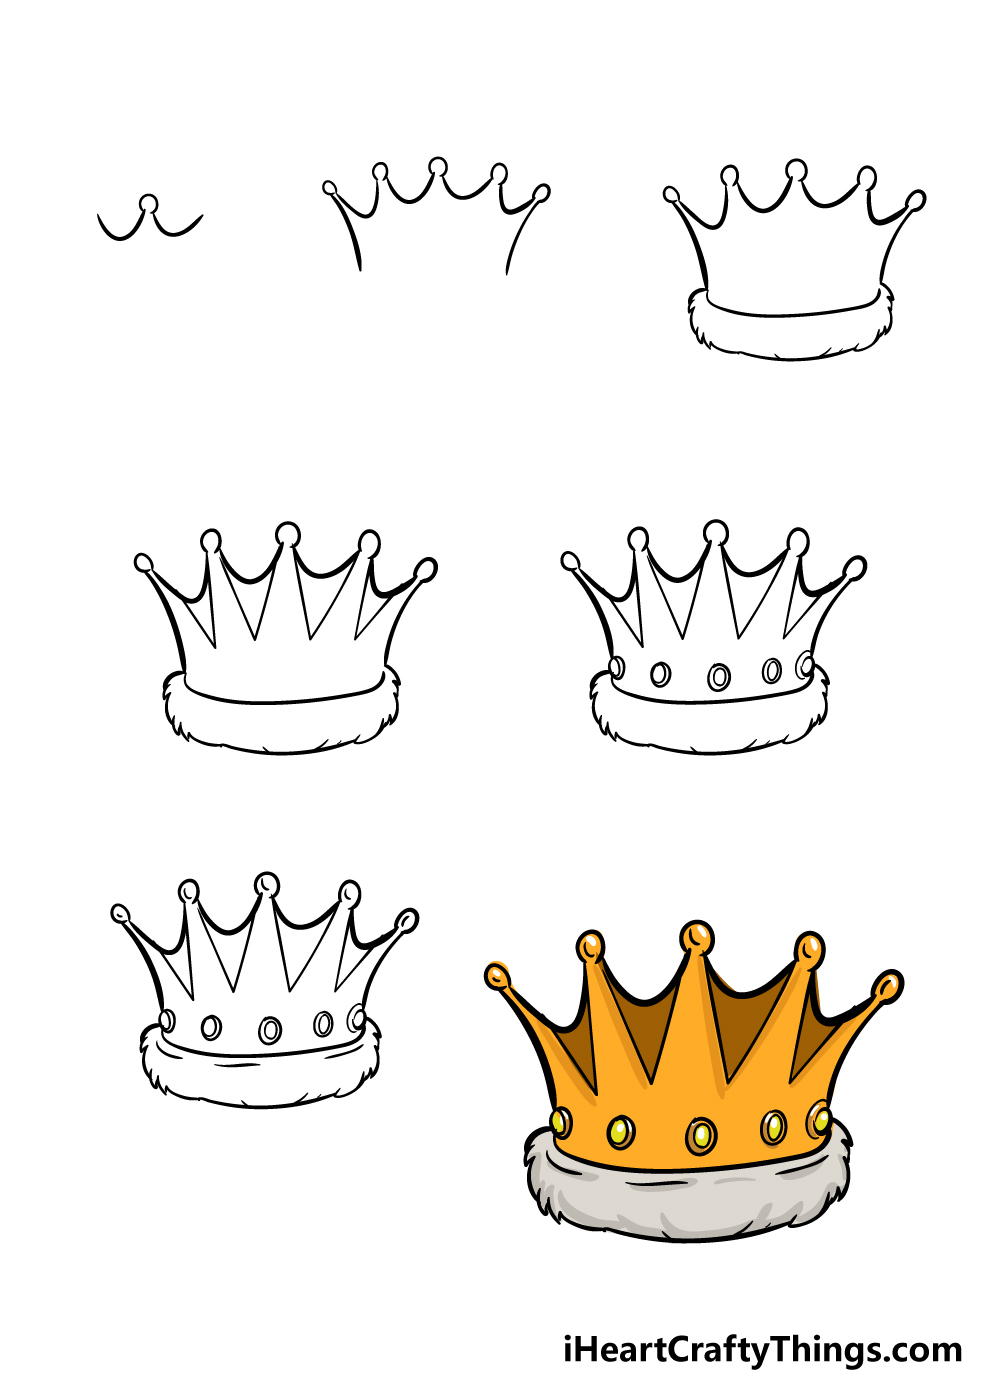 Hướng dẫn cách Vẽ vương miện chỉ trong 7 bước đơn giản